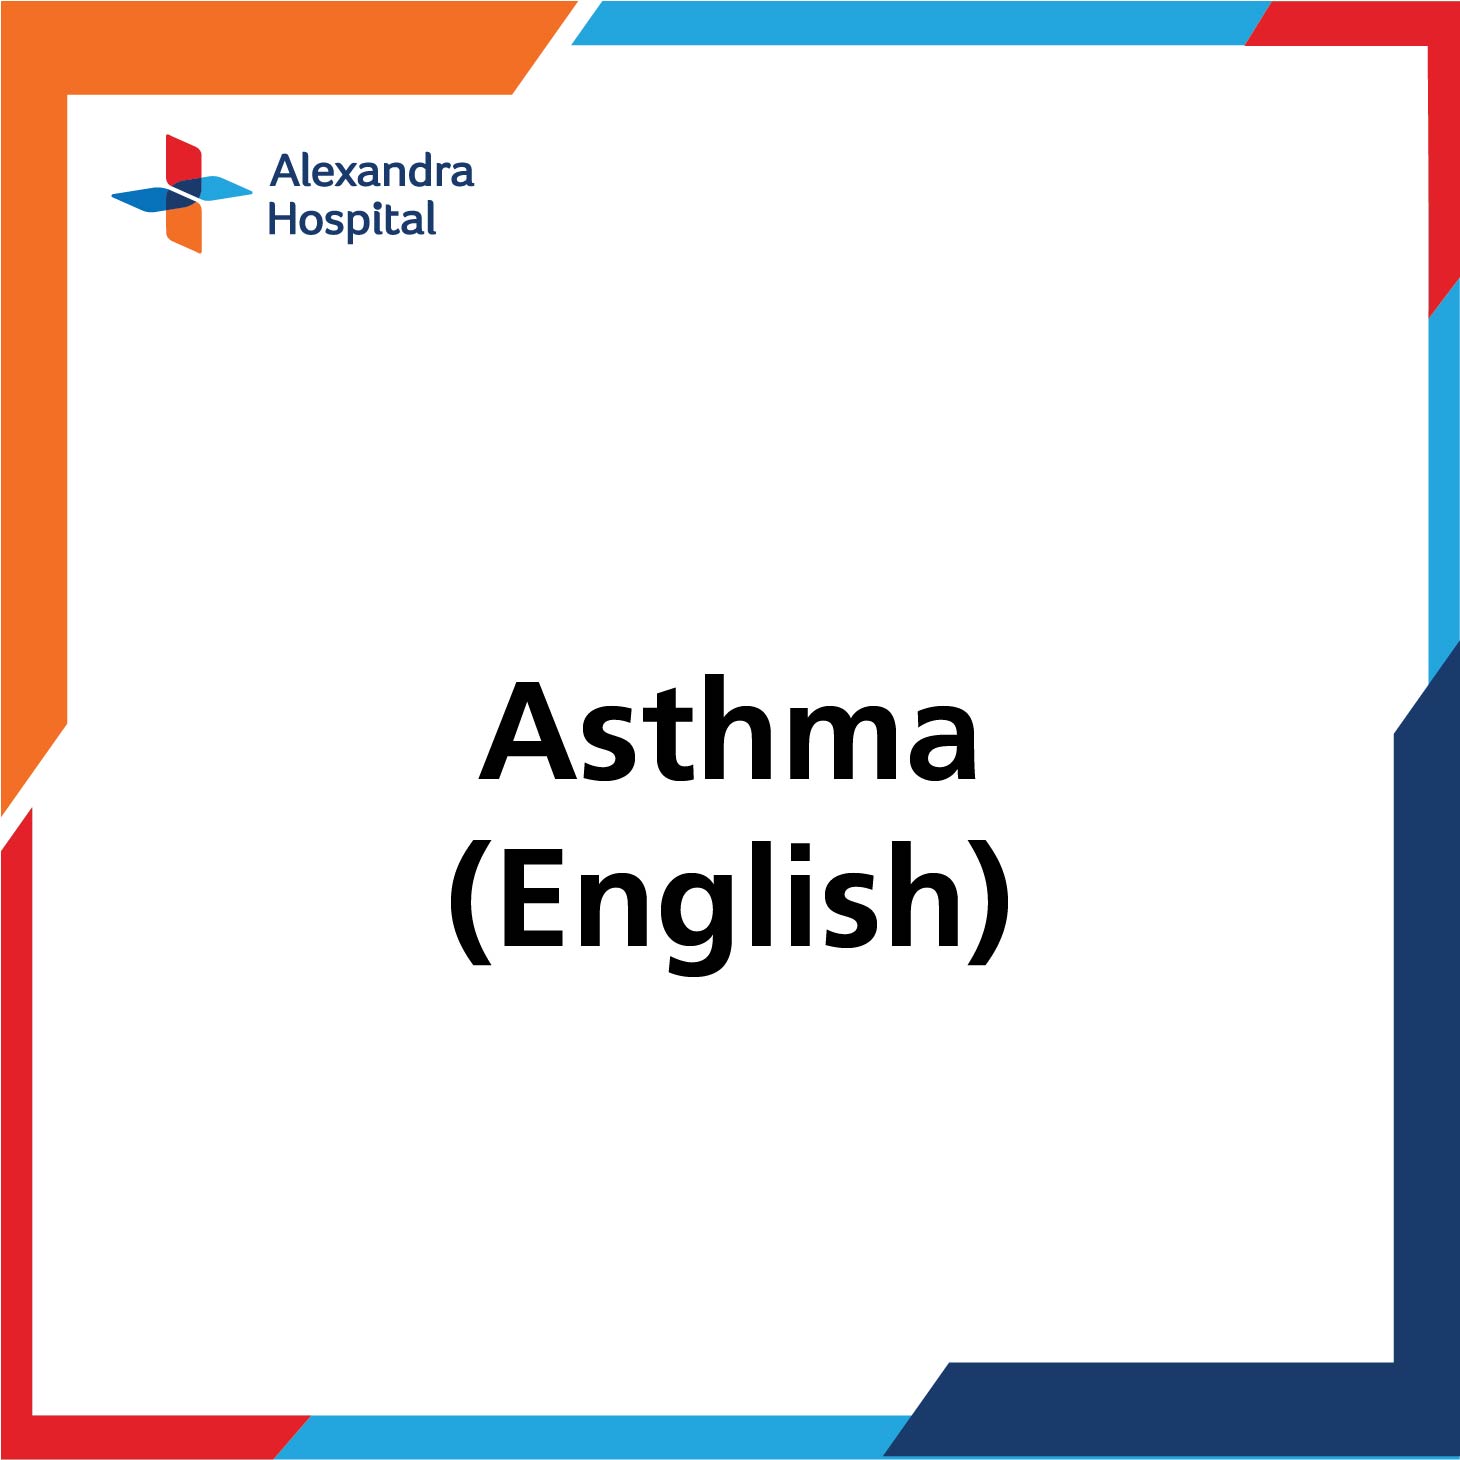 Asthma (English)